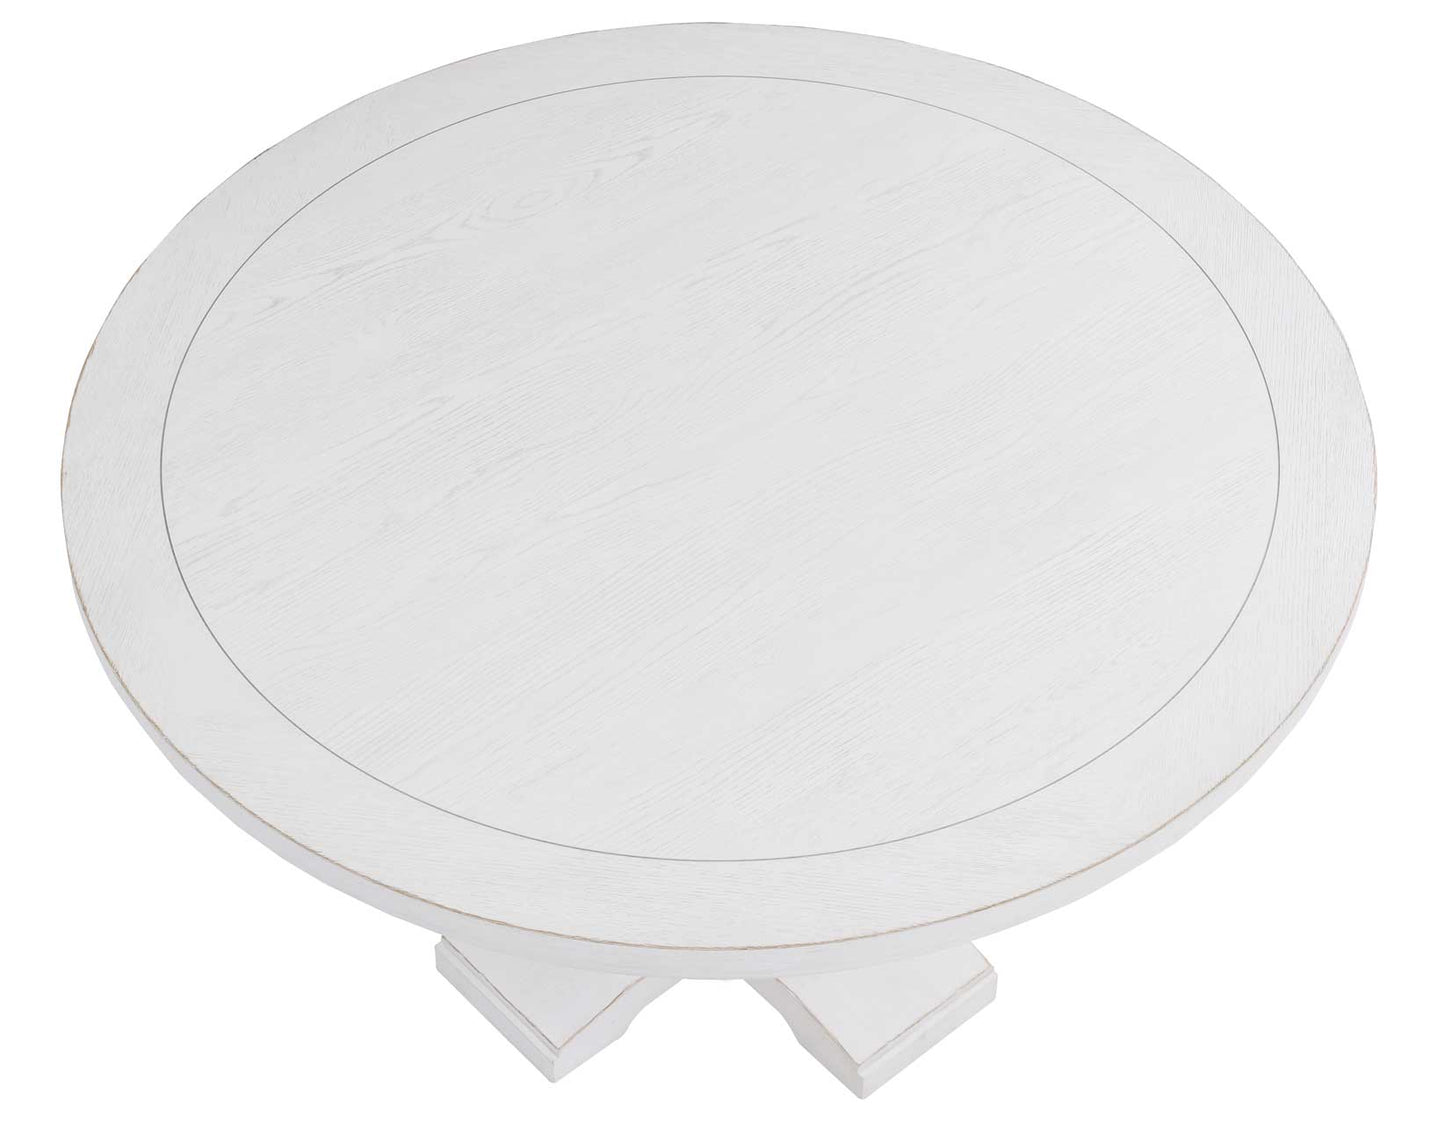 Warren 54″ Round Pedestal Dining Table, White